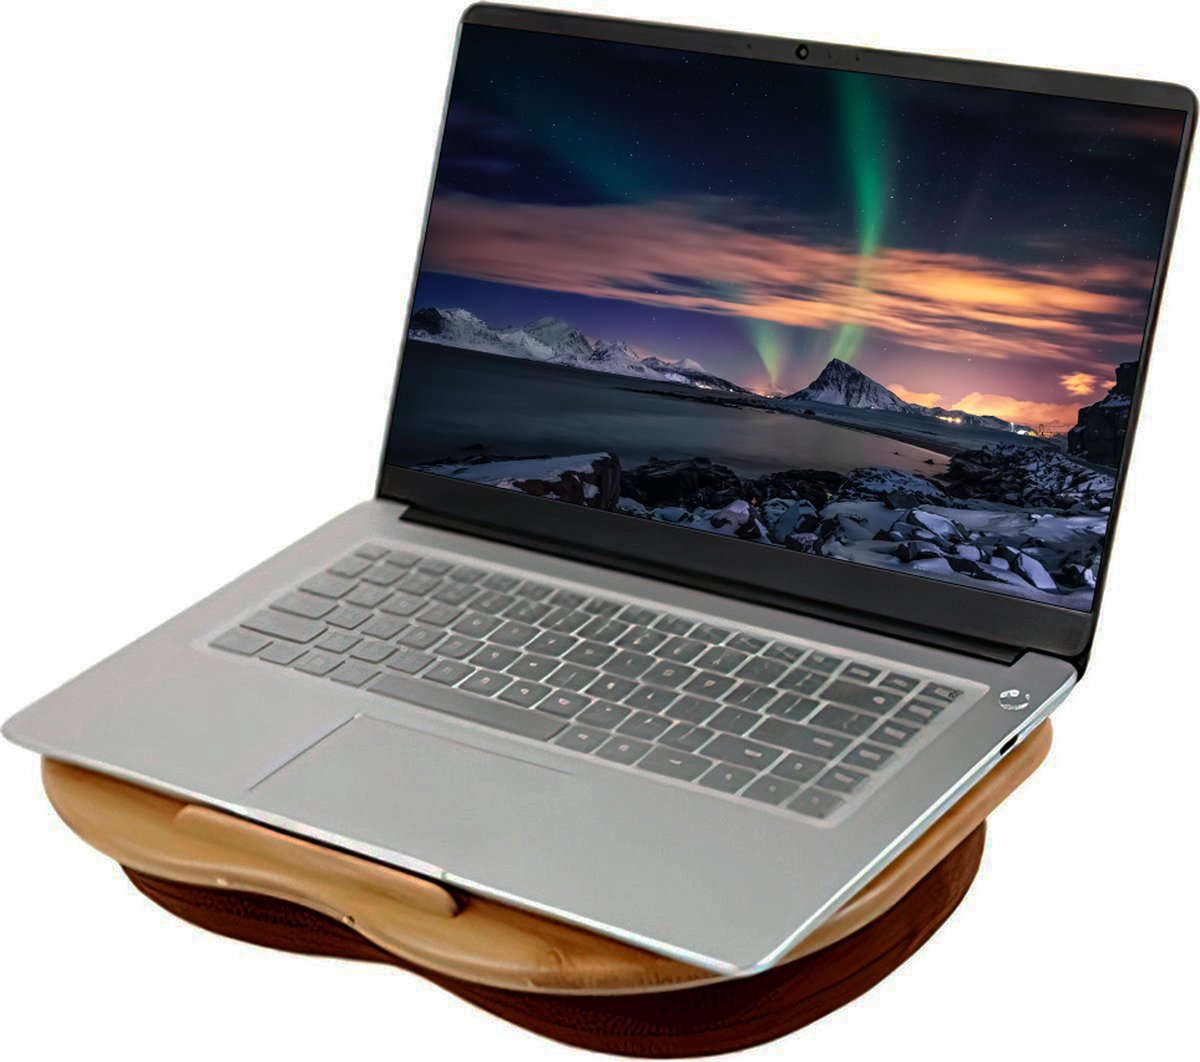 YUGN Laptopkussen 15 inch - Laptop kussen - laptop tray met kussen - Schootbureau - Schootkussen - Thuiswerken - Cadeautip